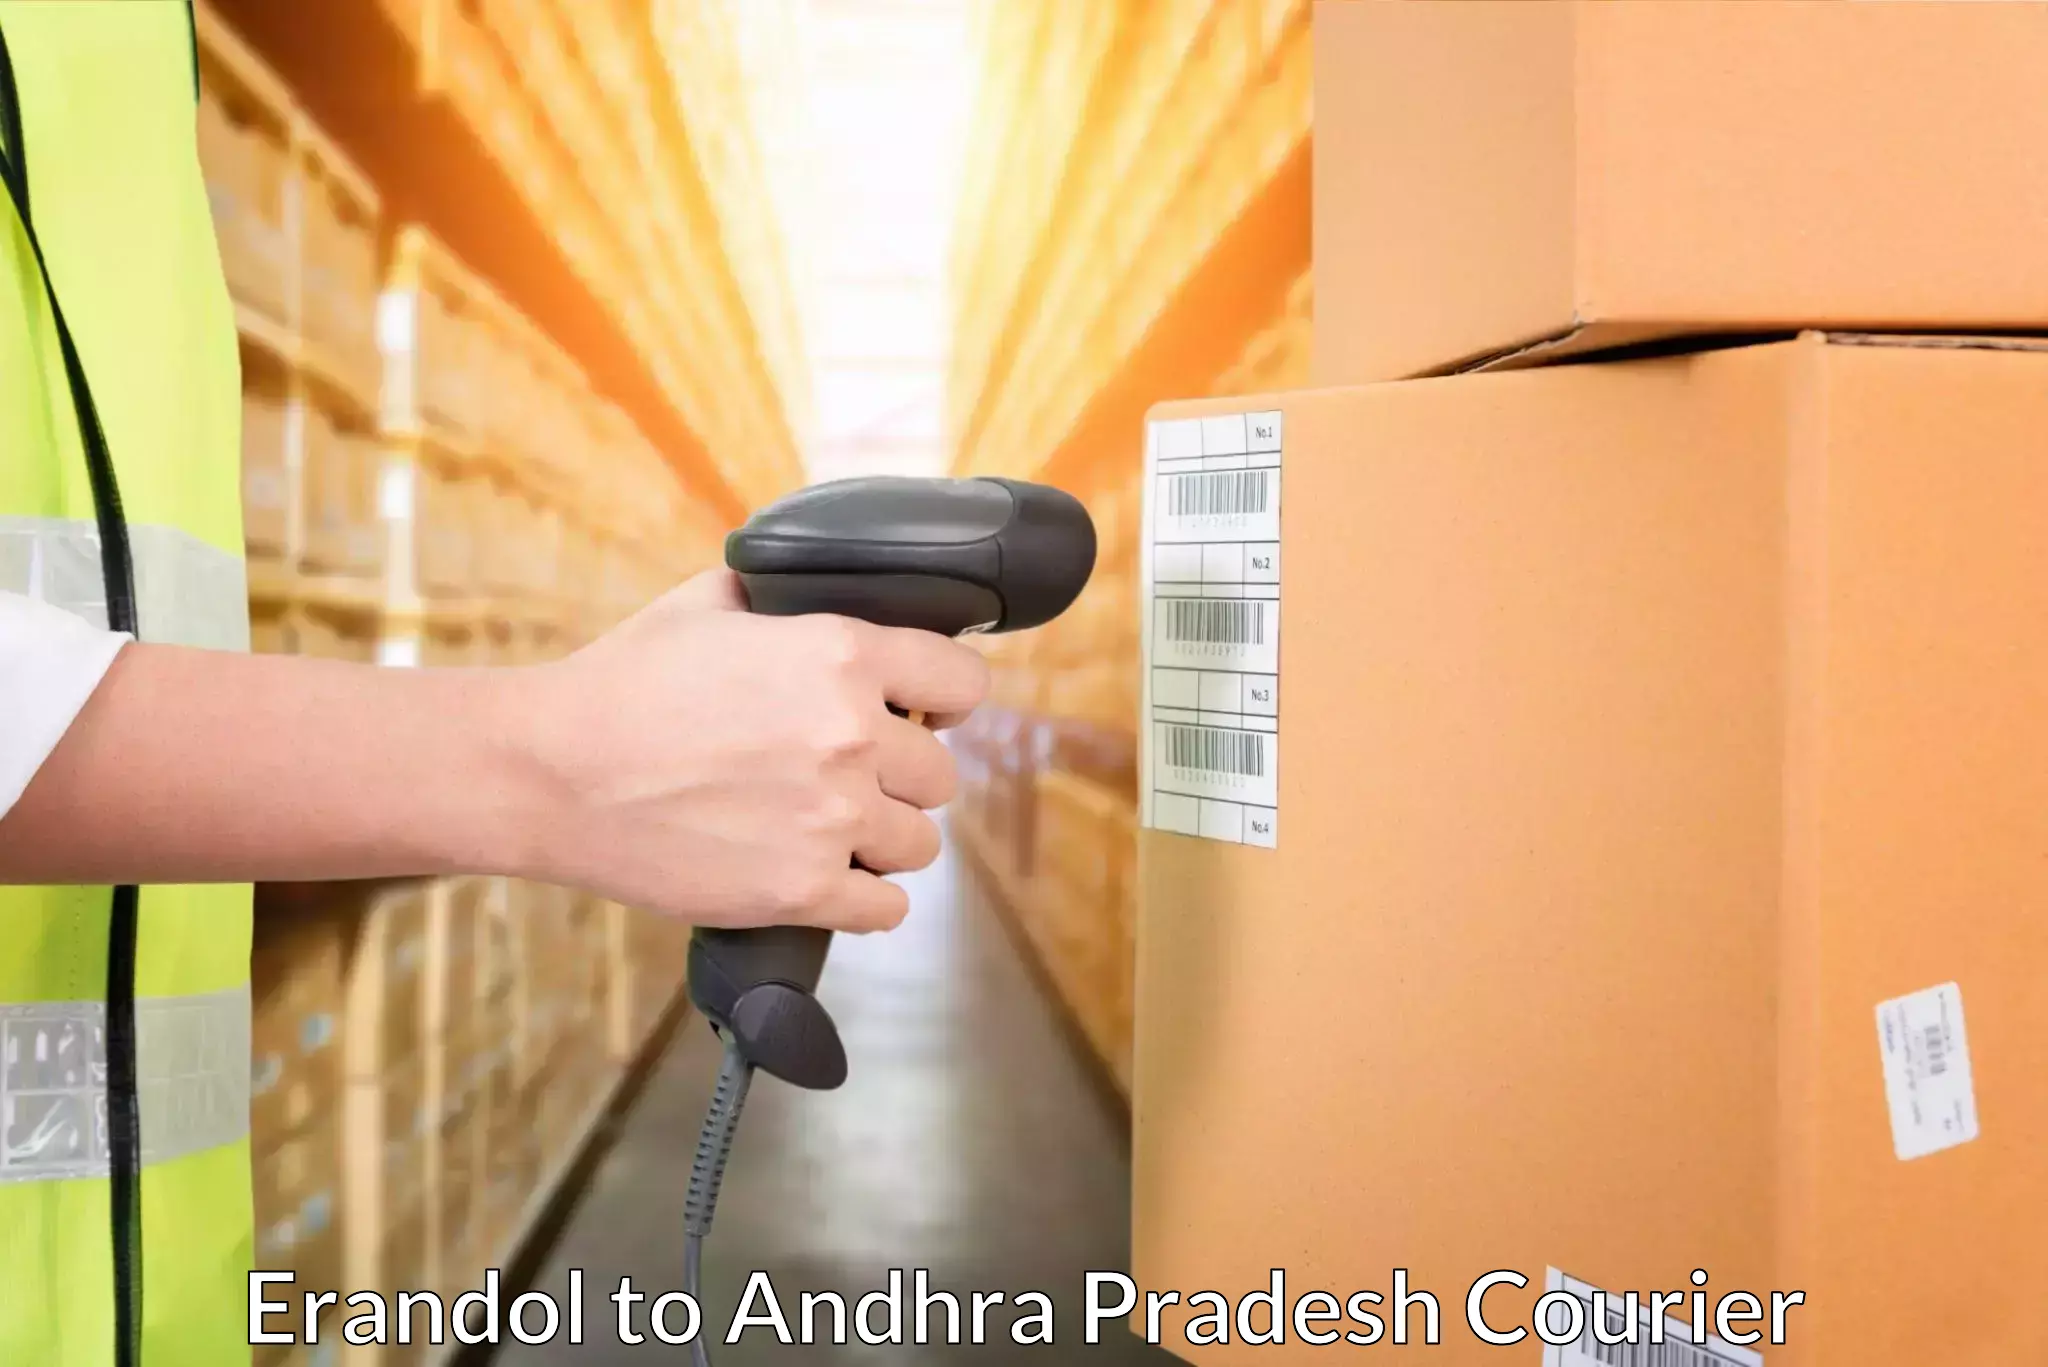 Urgent courier needs Erandol to Allagadda